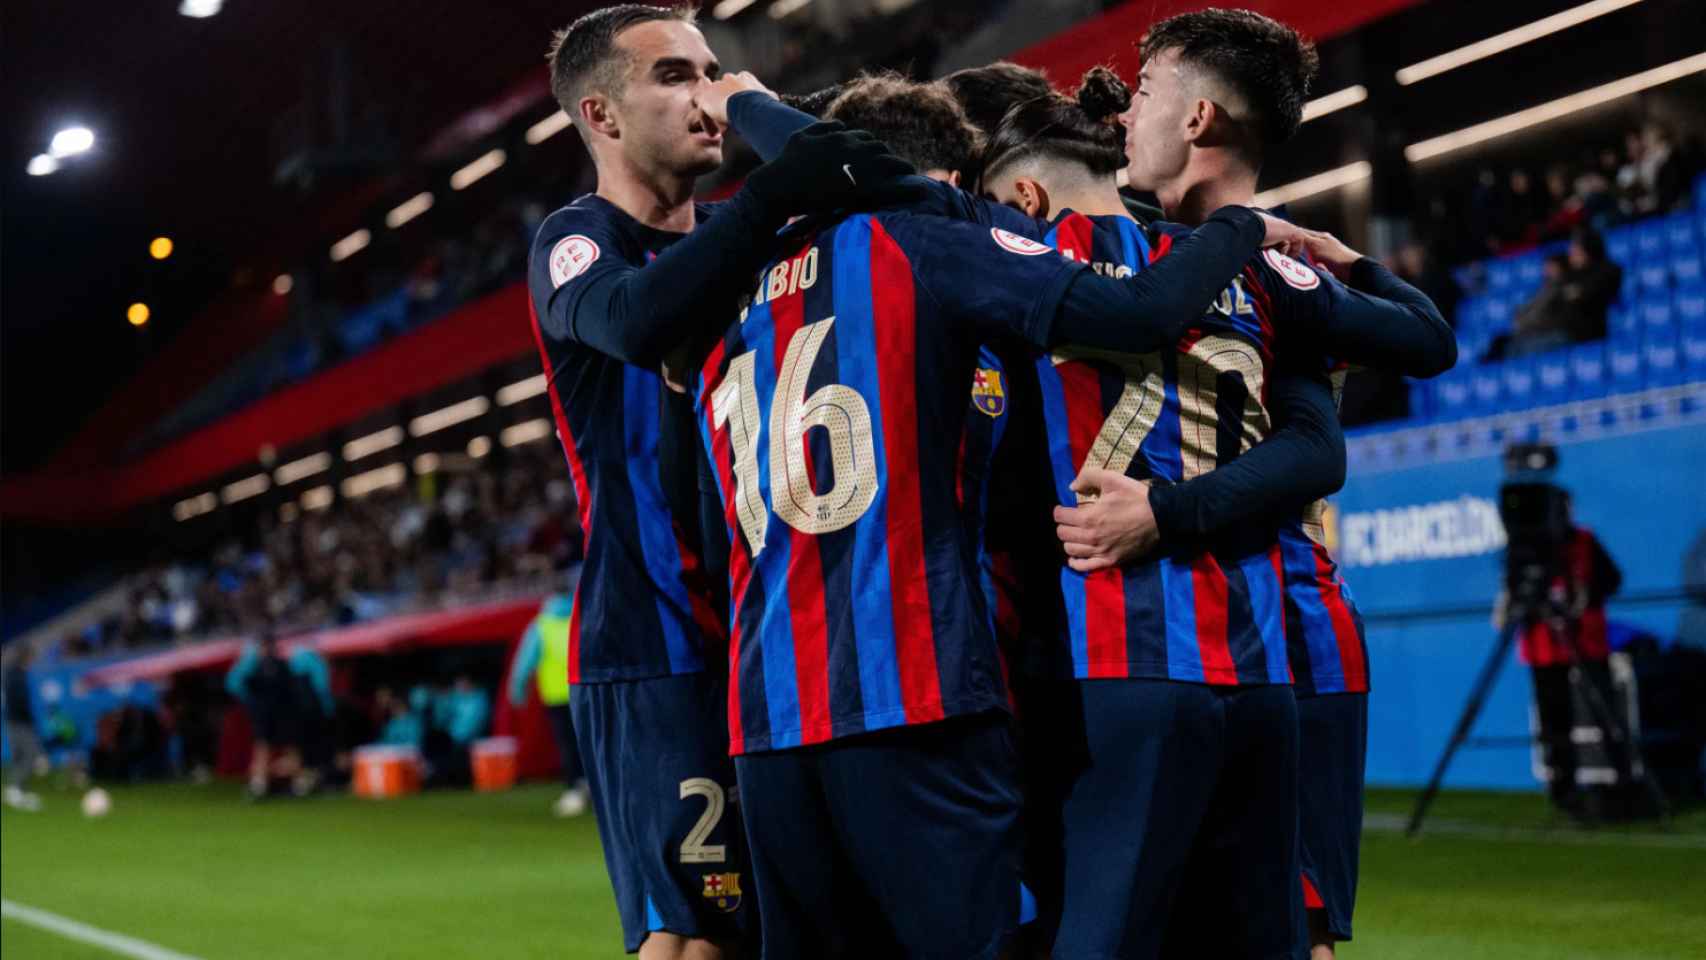 Los jugadores del Barça B celebran uno de los goles contra el Irún / FCB